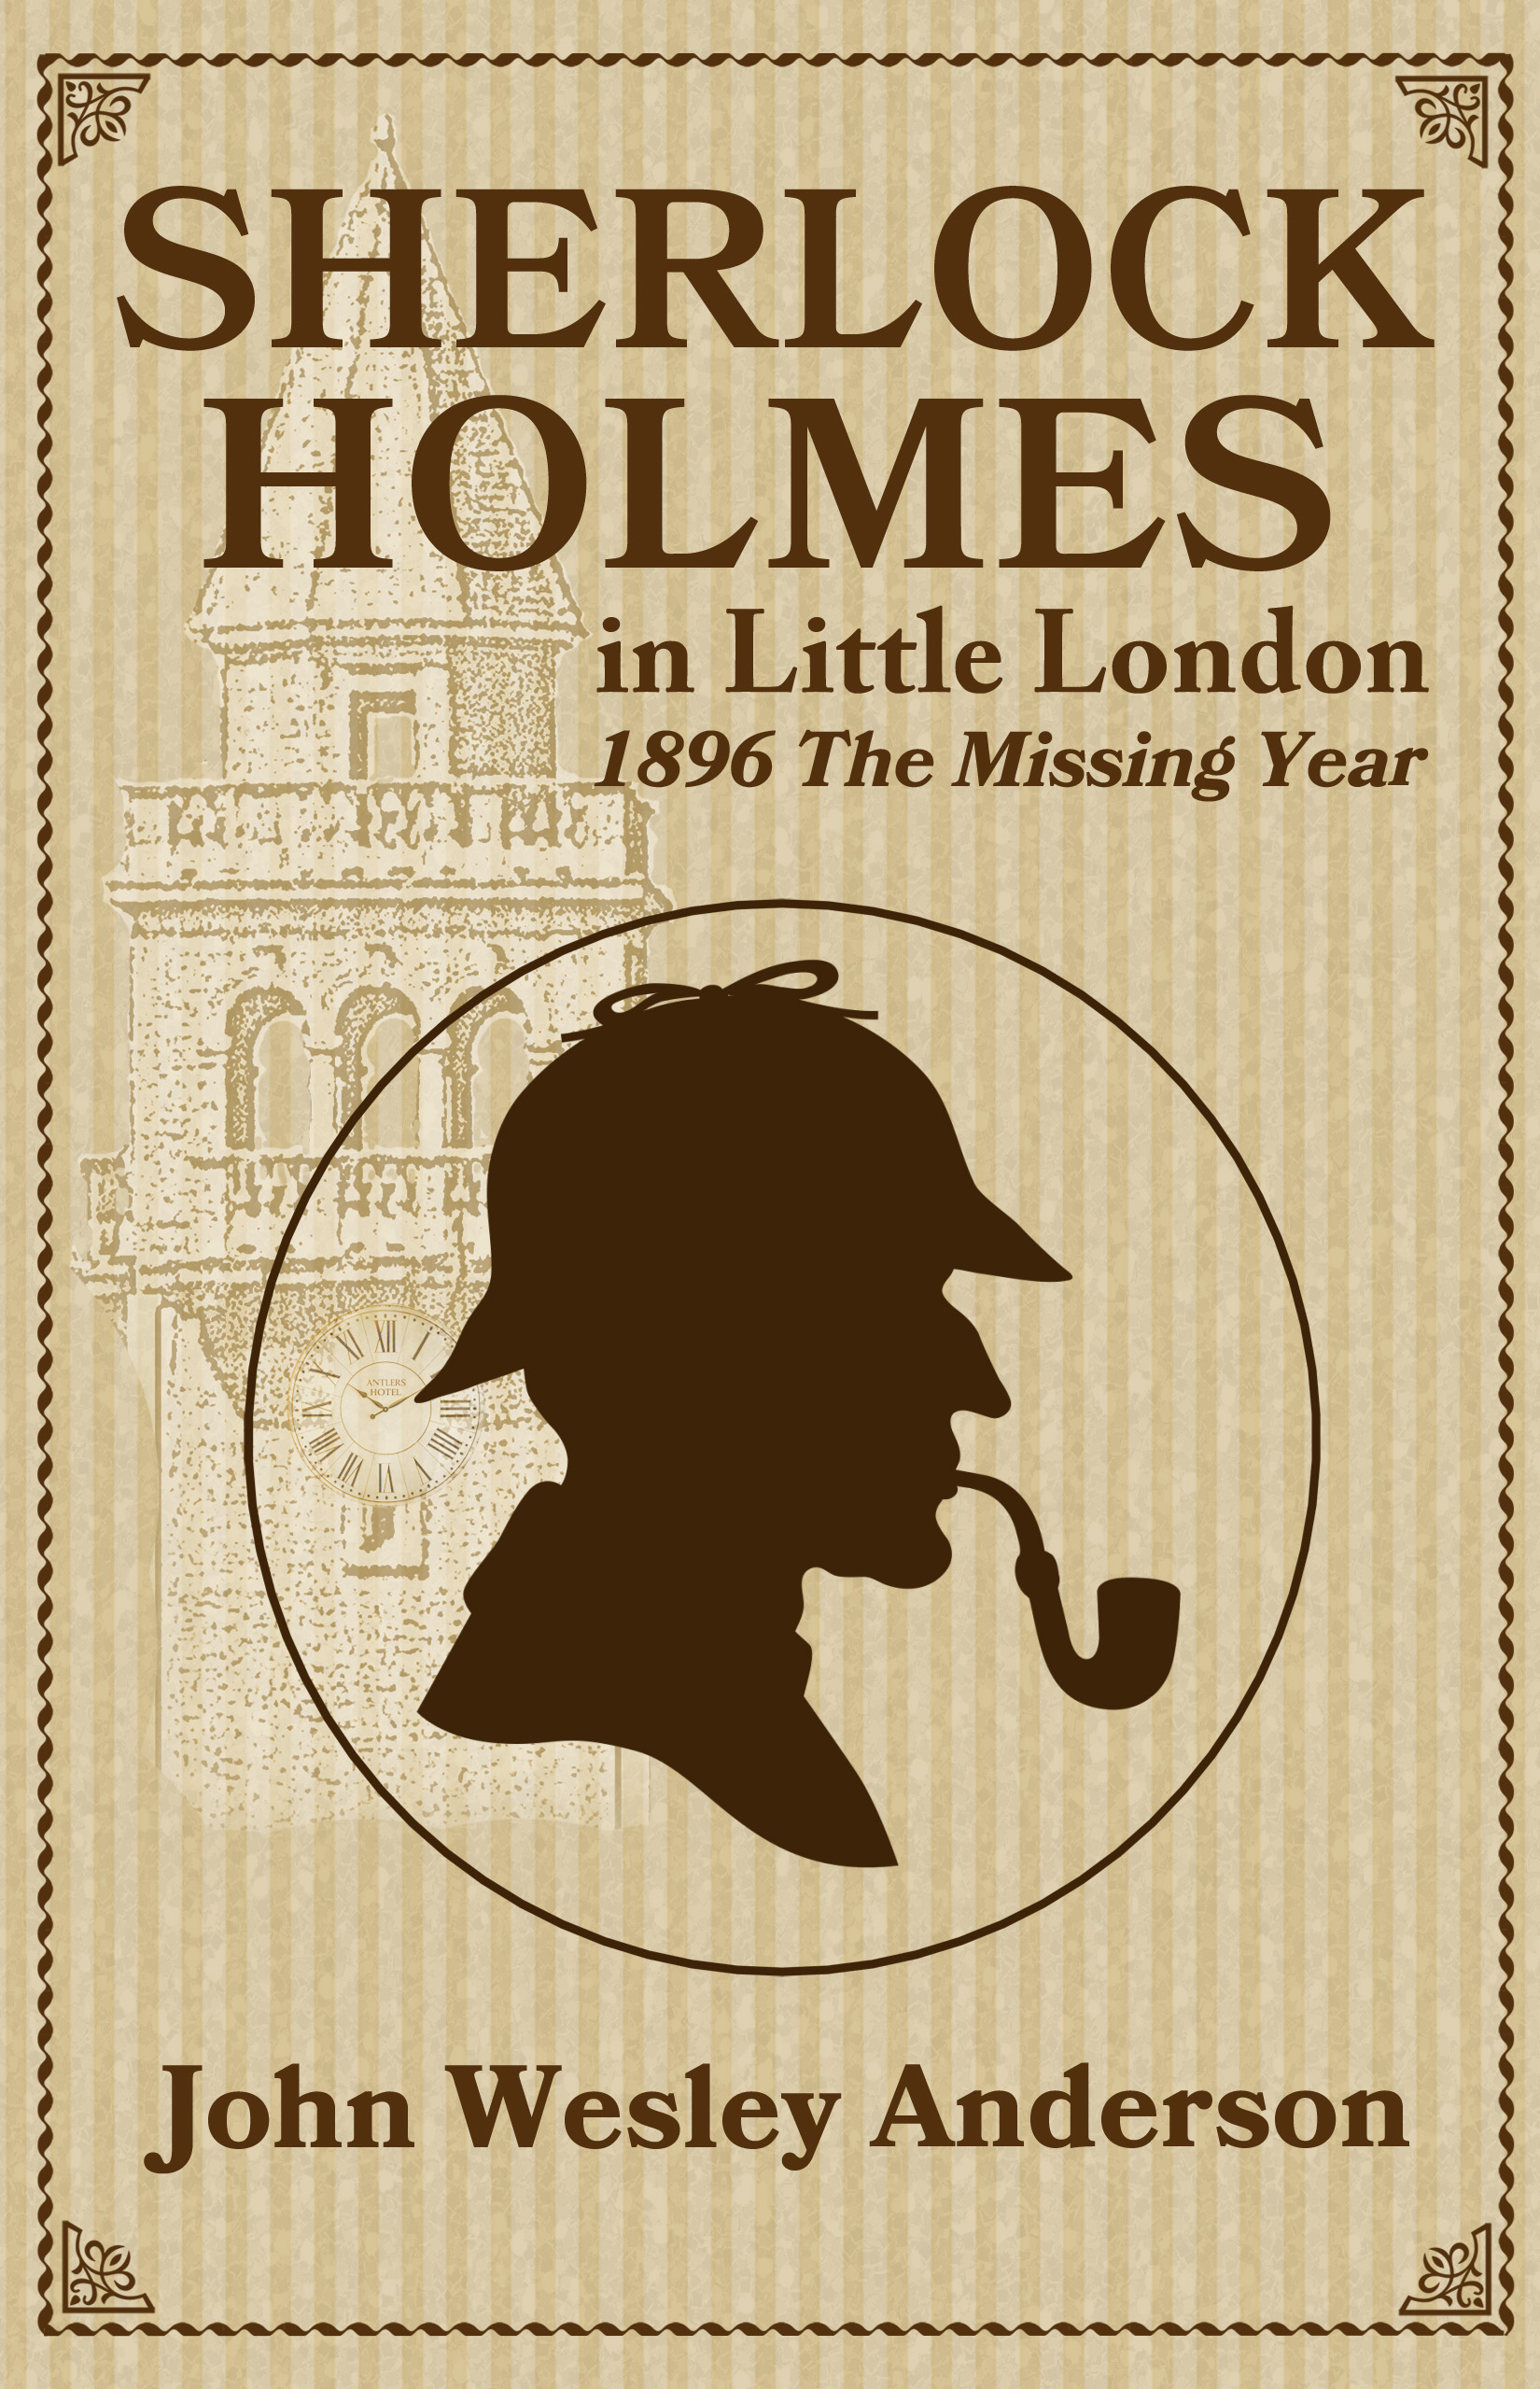 Sherlock Holmes in Little London by John Wesley Anderson